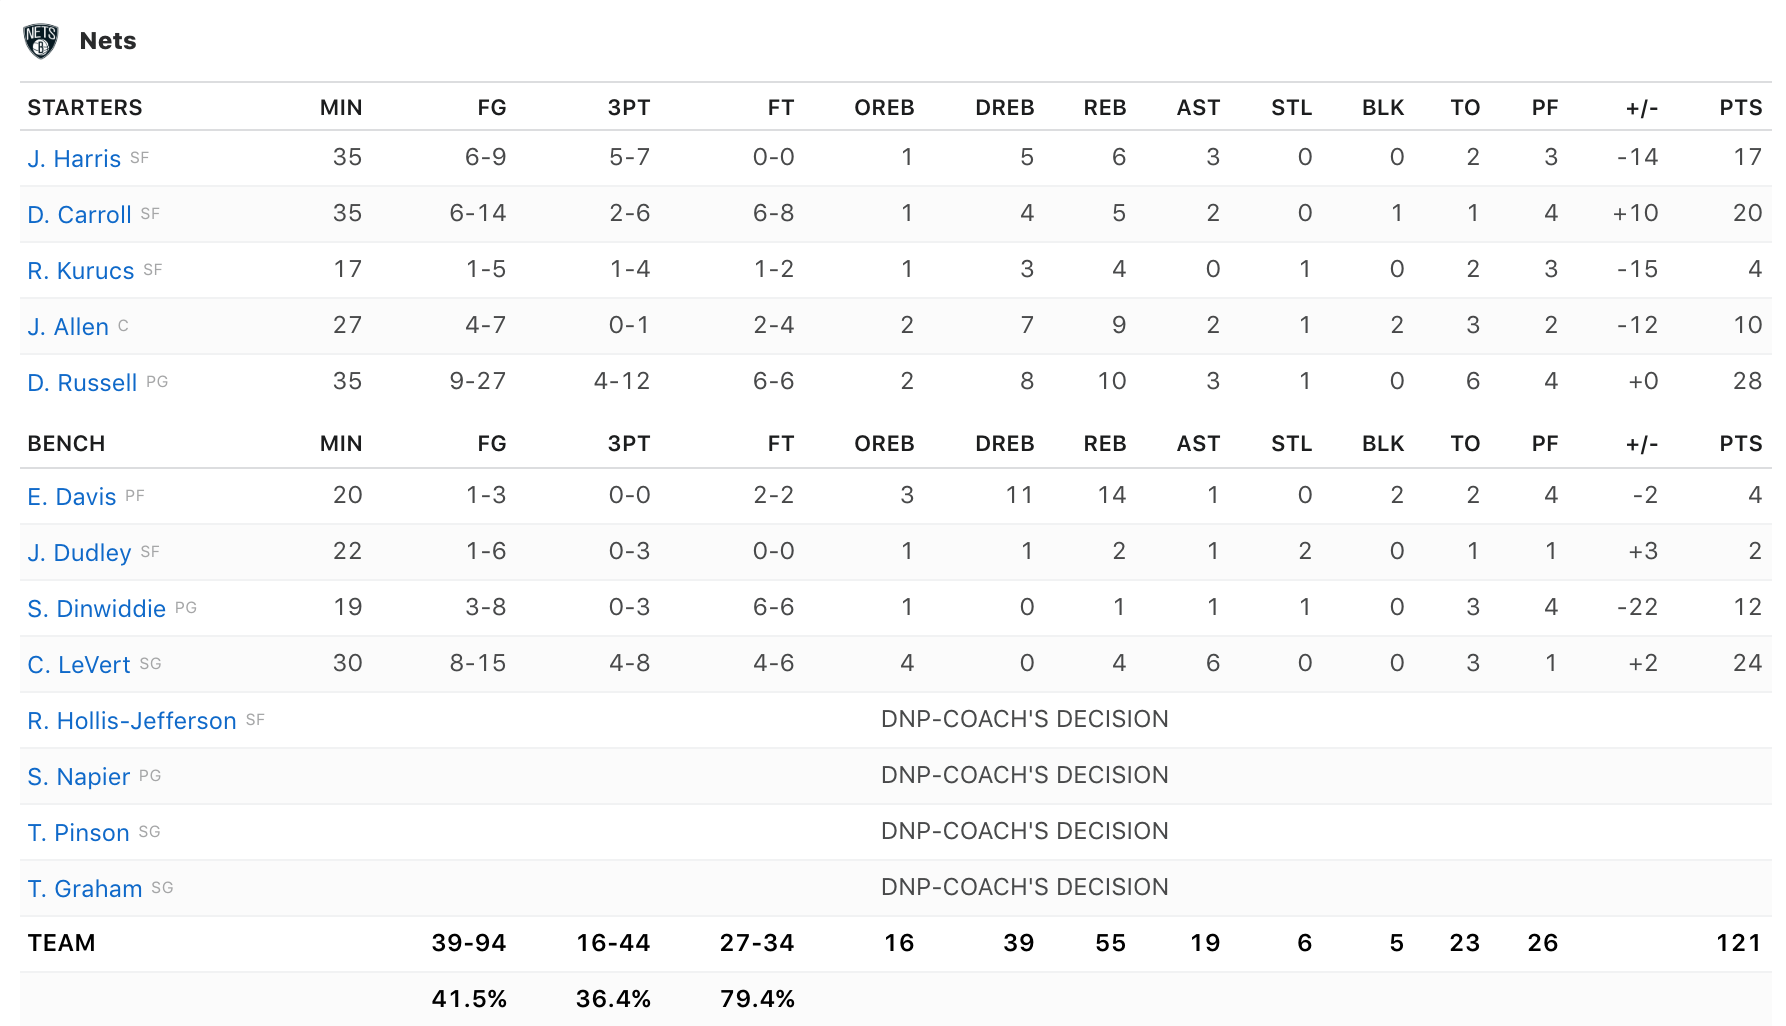 Vừa trở lại, Giannis Antetokounmpo trút giận lên Brooklyn Nets cùng với... cột rổ và đồng hồ 24 giây?